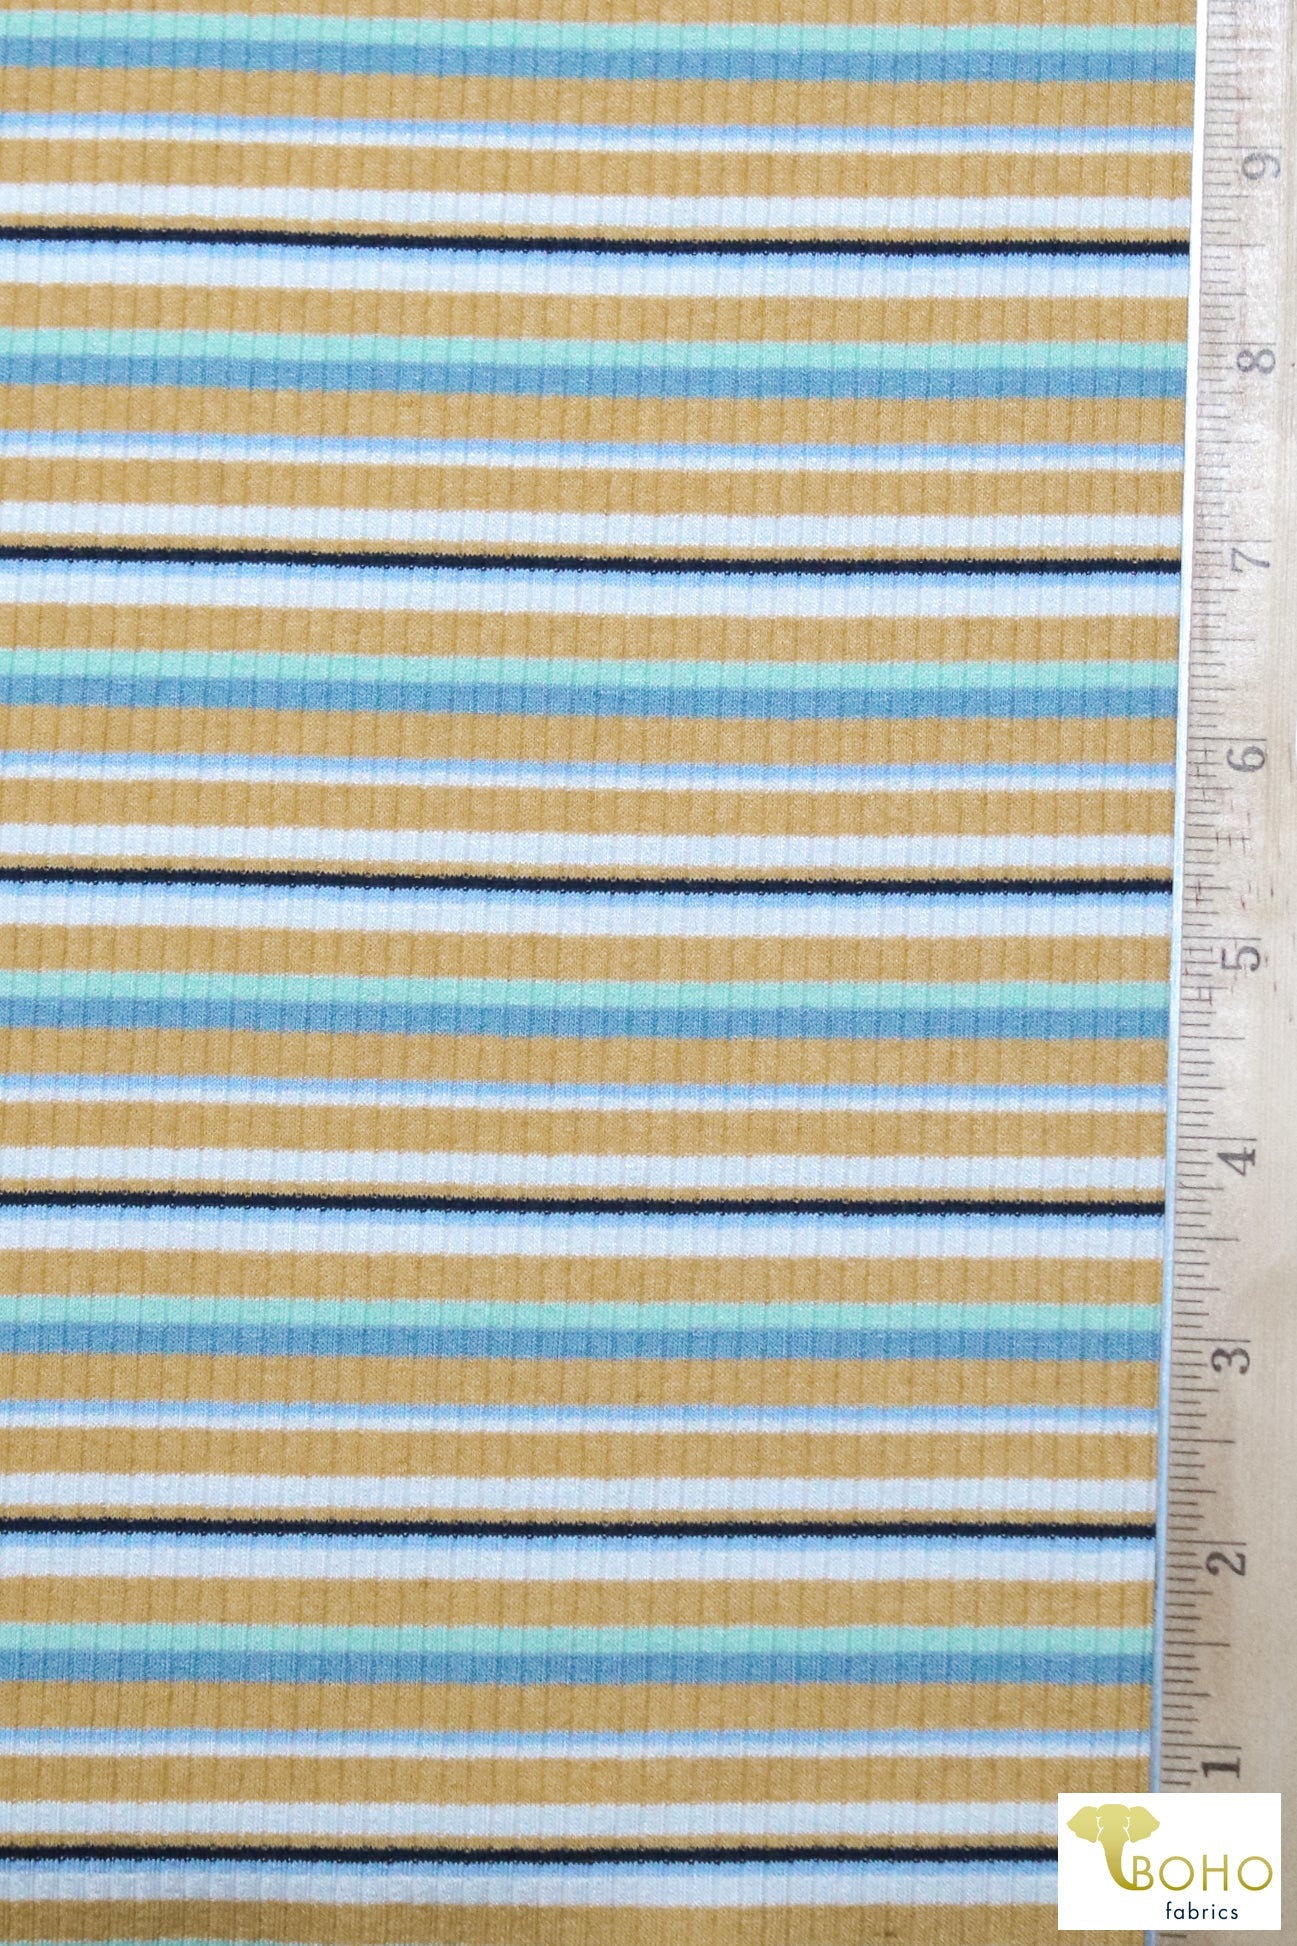 Last Cuts! Sunshine Field Stripes, 4x2 Rib Knit. RIB-128 - Boho Fabrics